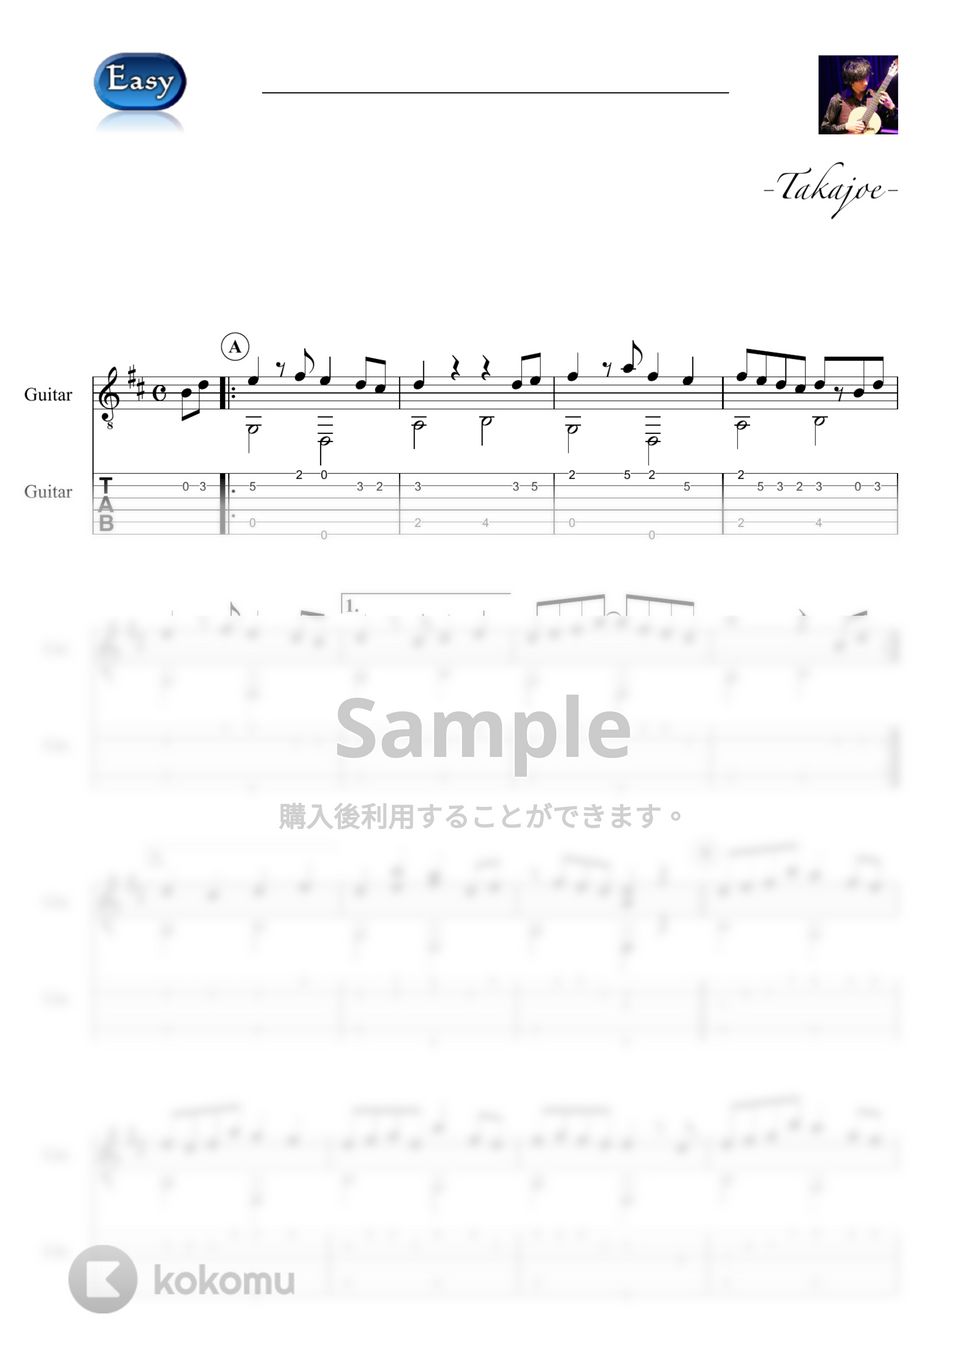 ヨルシカ - ただ君に晴れ (Easy&Short Ver.) by 鷹城-Takajoe-